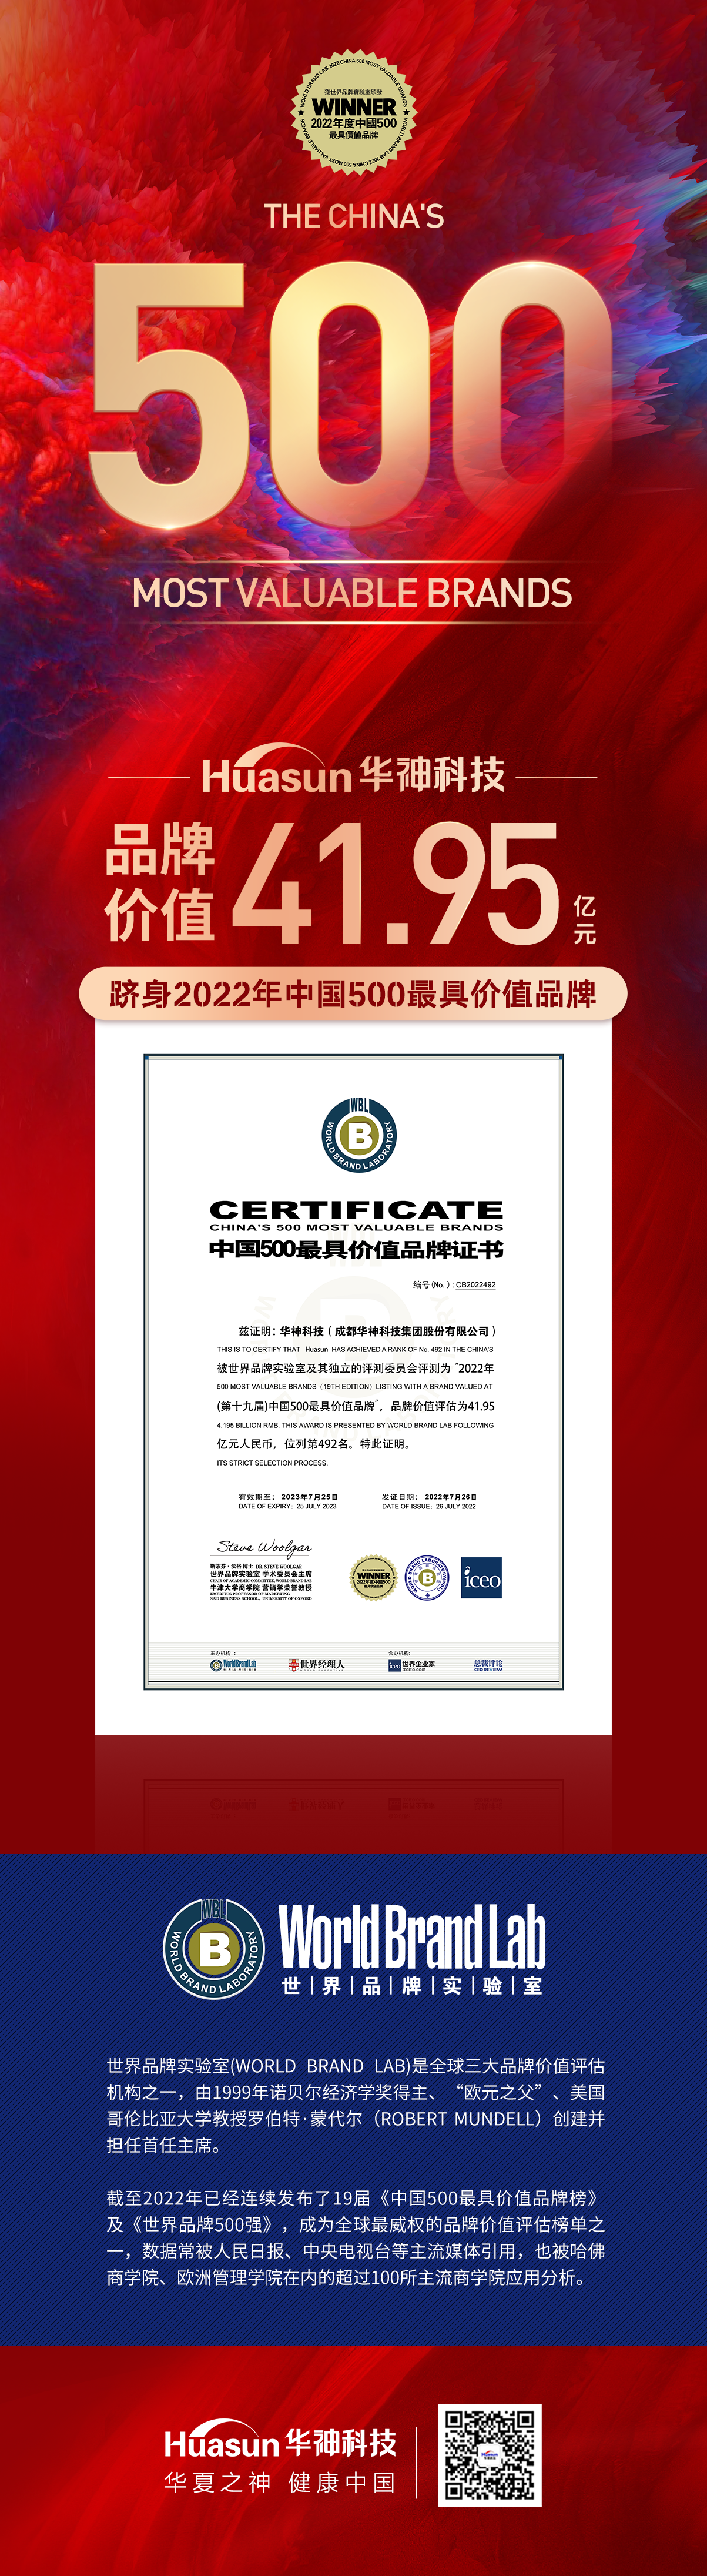 华神科技首次荣膺中国500最具价值品牌 品牌价值达41.95亿